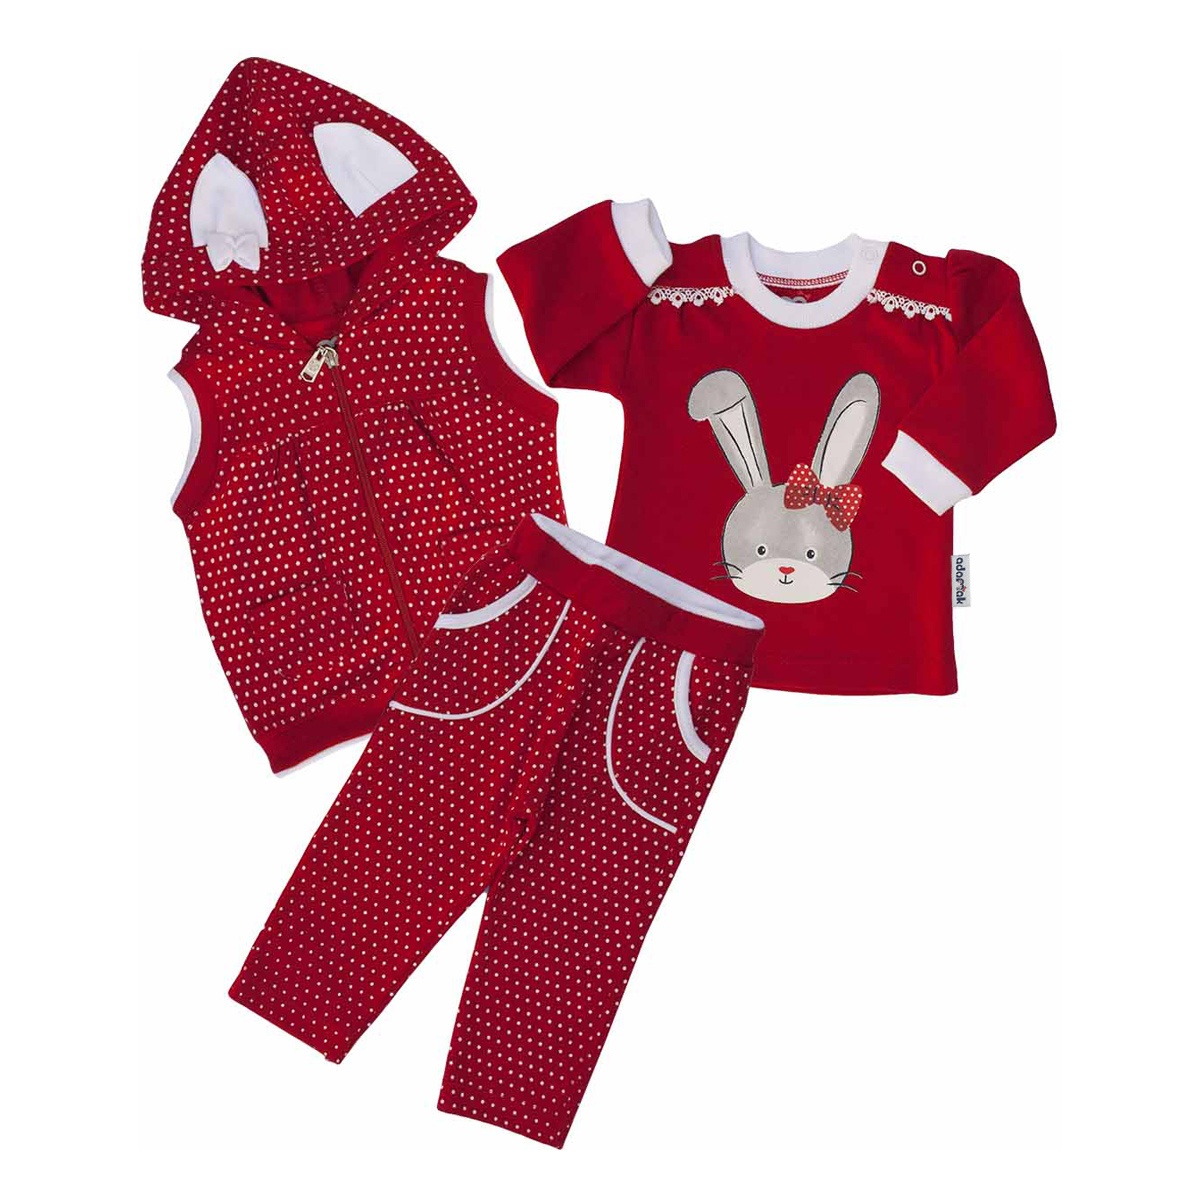 ست سه تکه لباس نوزادی آدمک طرح خرگوش 263300R